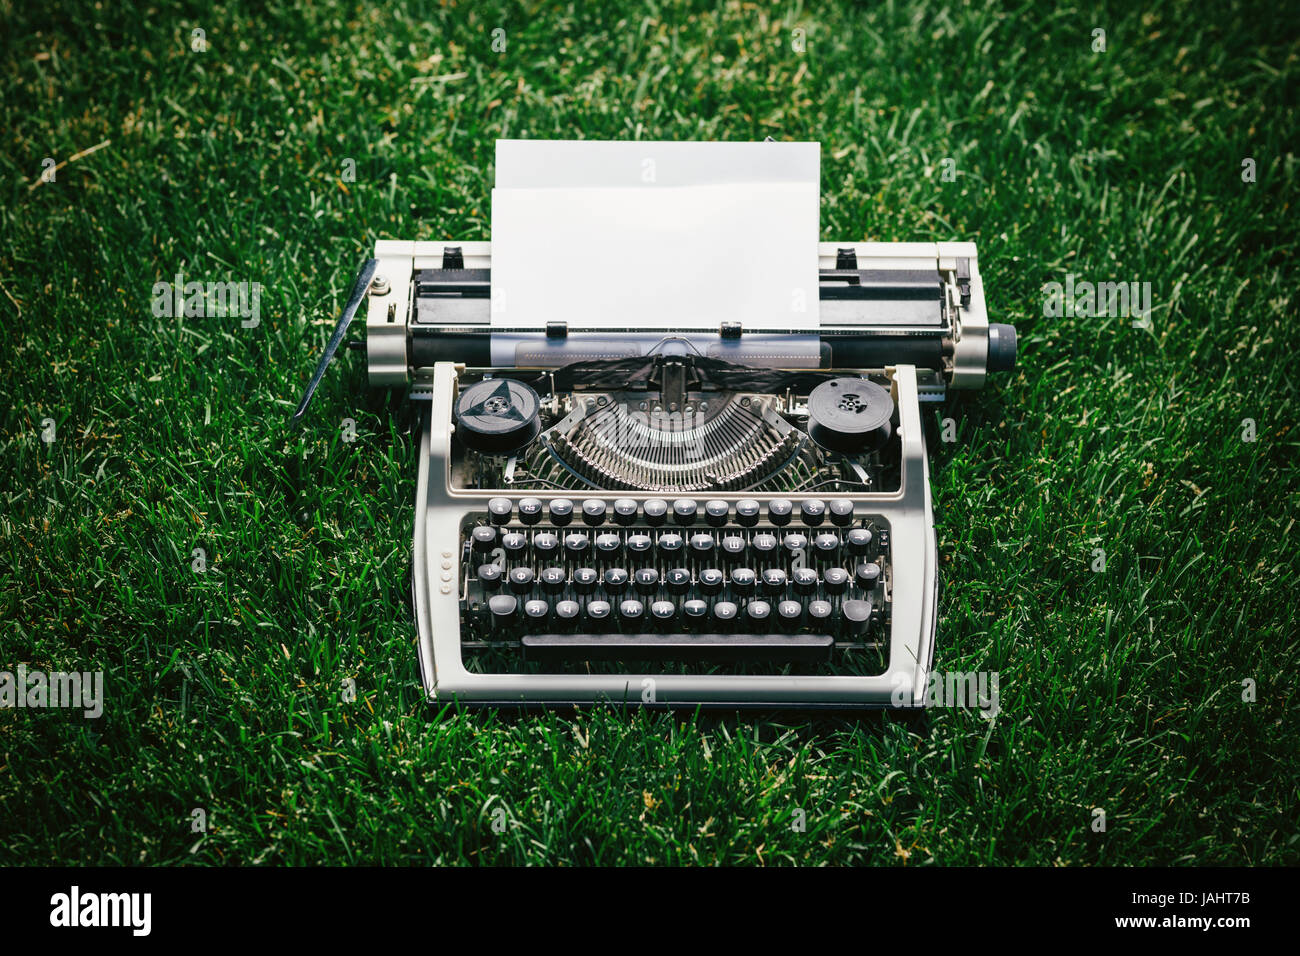 Foto von alten Schreibmaschine auf dem grünen Rasen mit einem Blatt Papier. Stockfoto